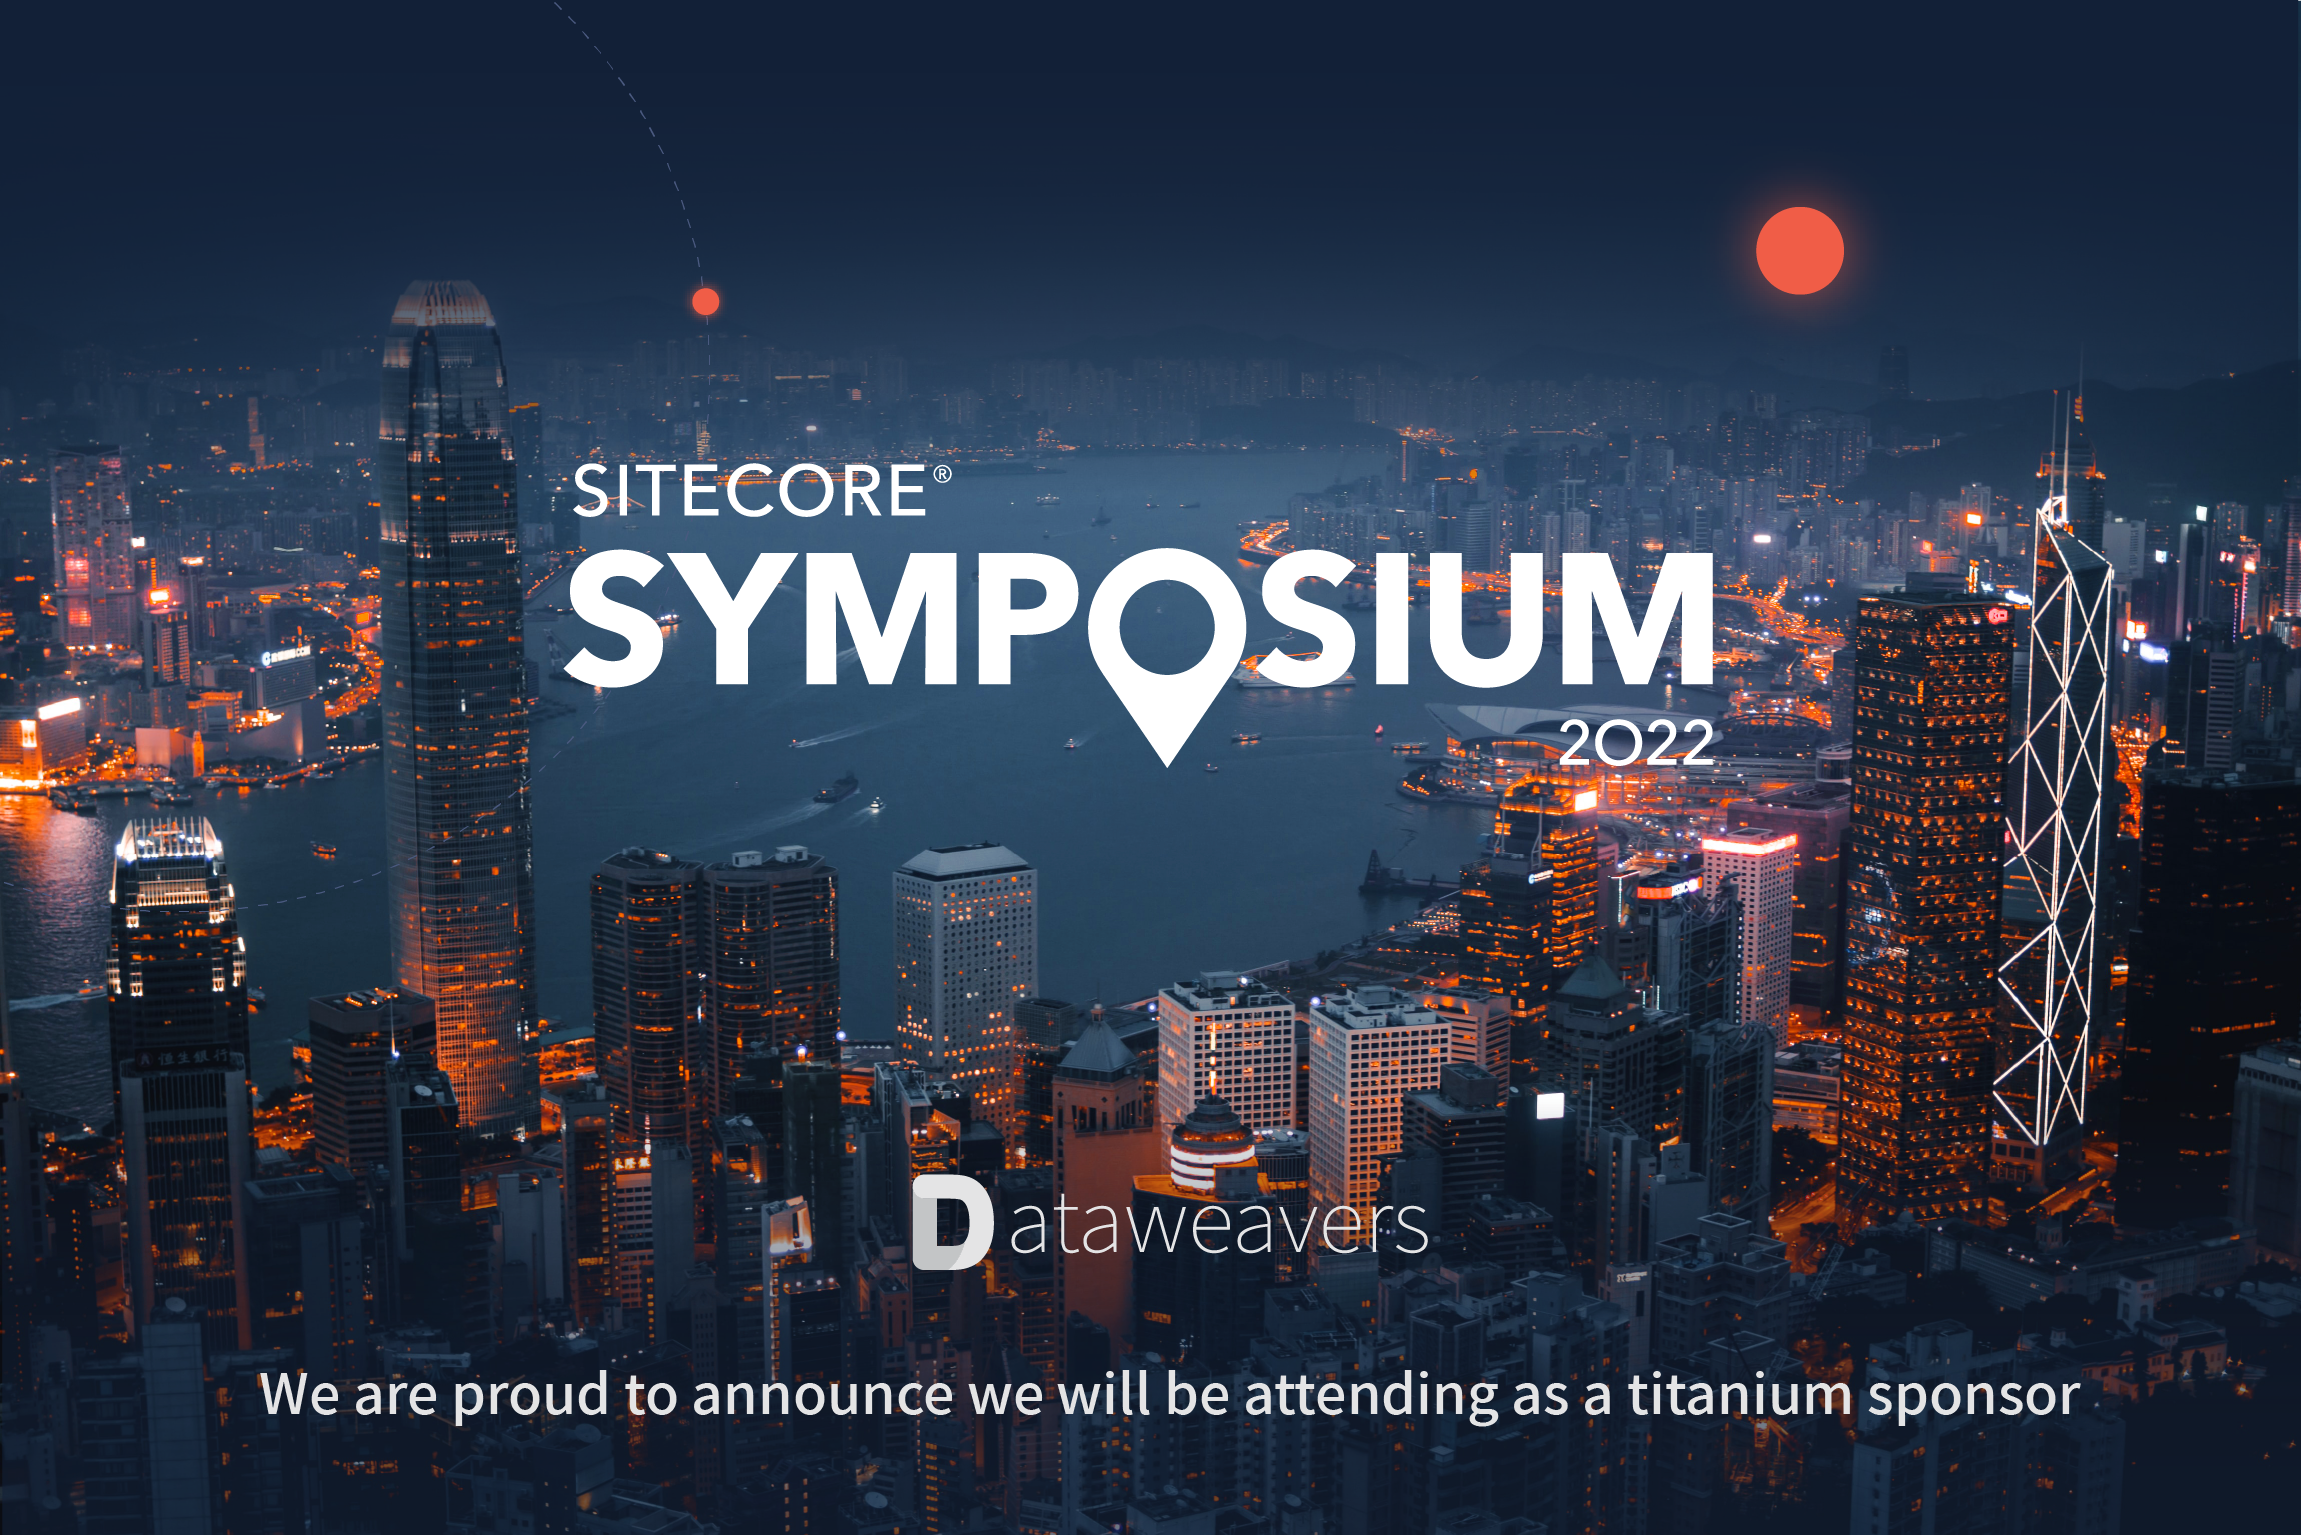 Spotlight on Sitecore Symposium 2022 with Dataweavers as Titanium Sponsor